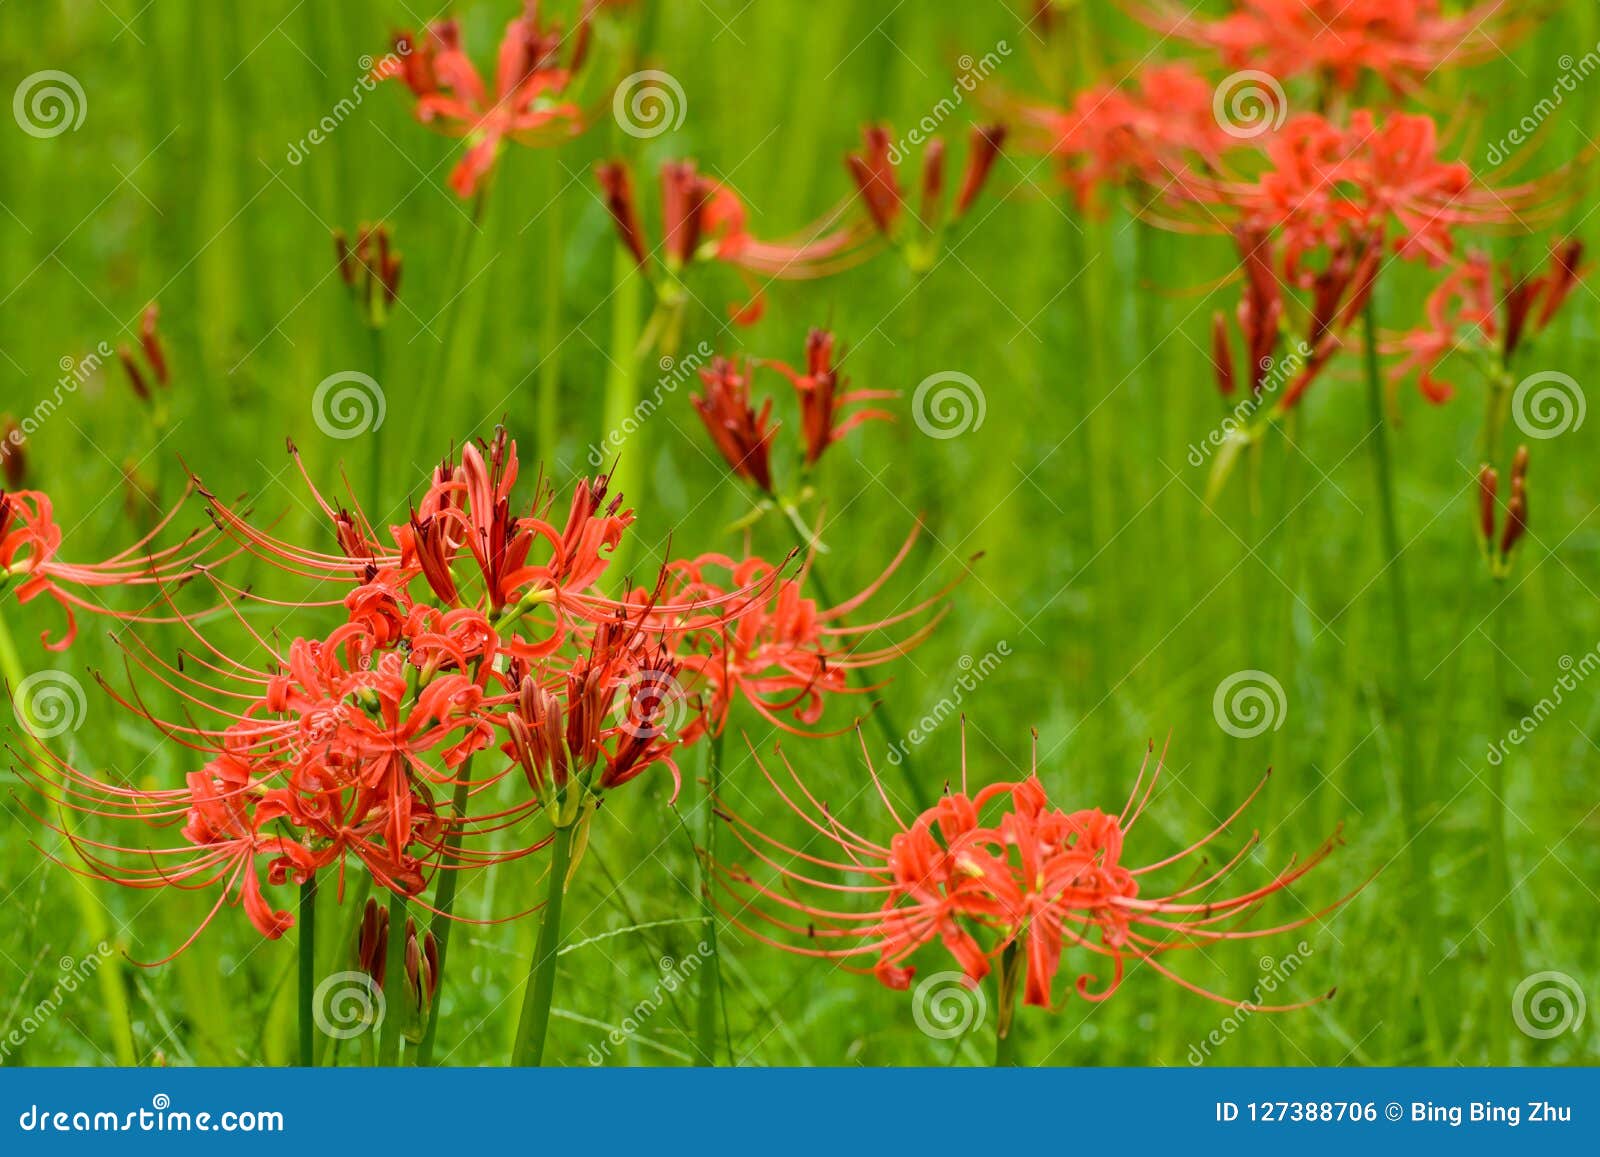 blooming red lycoris radiata